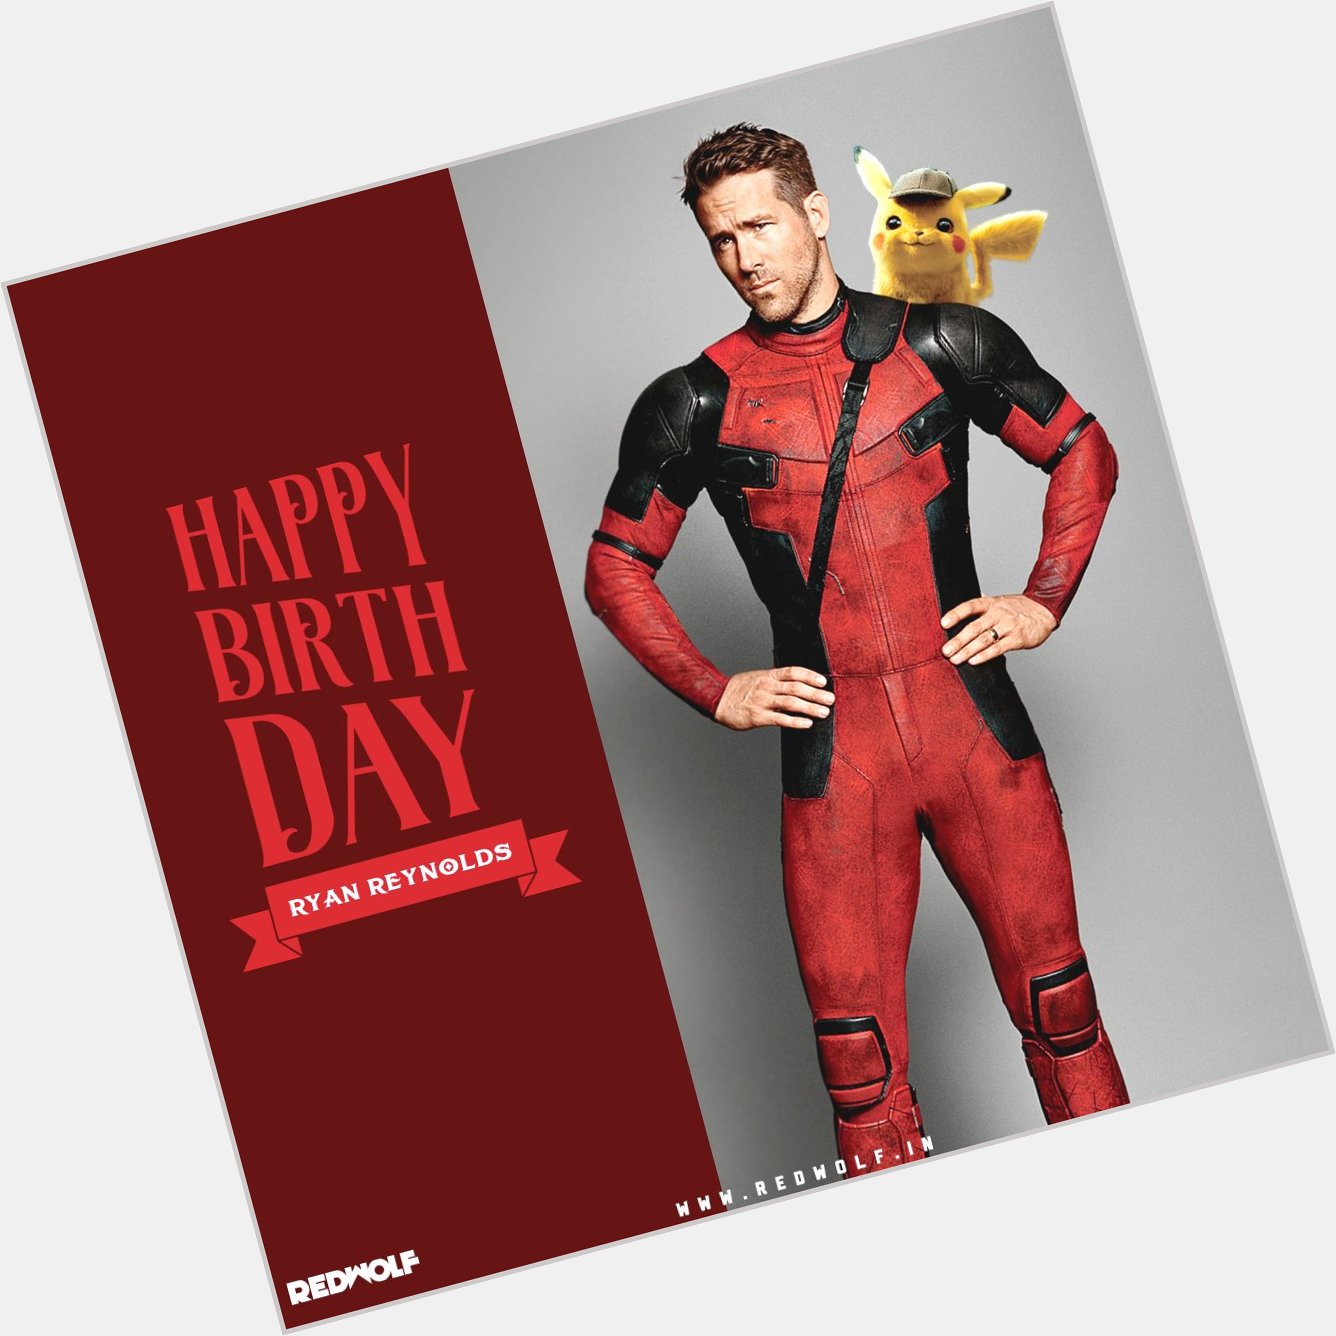 Happy Birthday D e a d p o o l P i k a c h u Ryan Reynolds!  